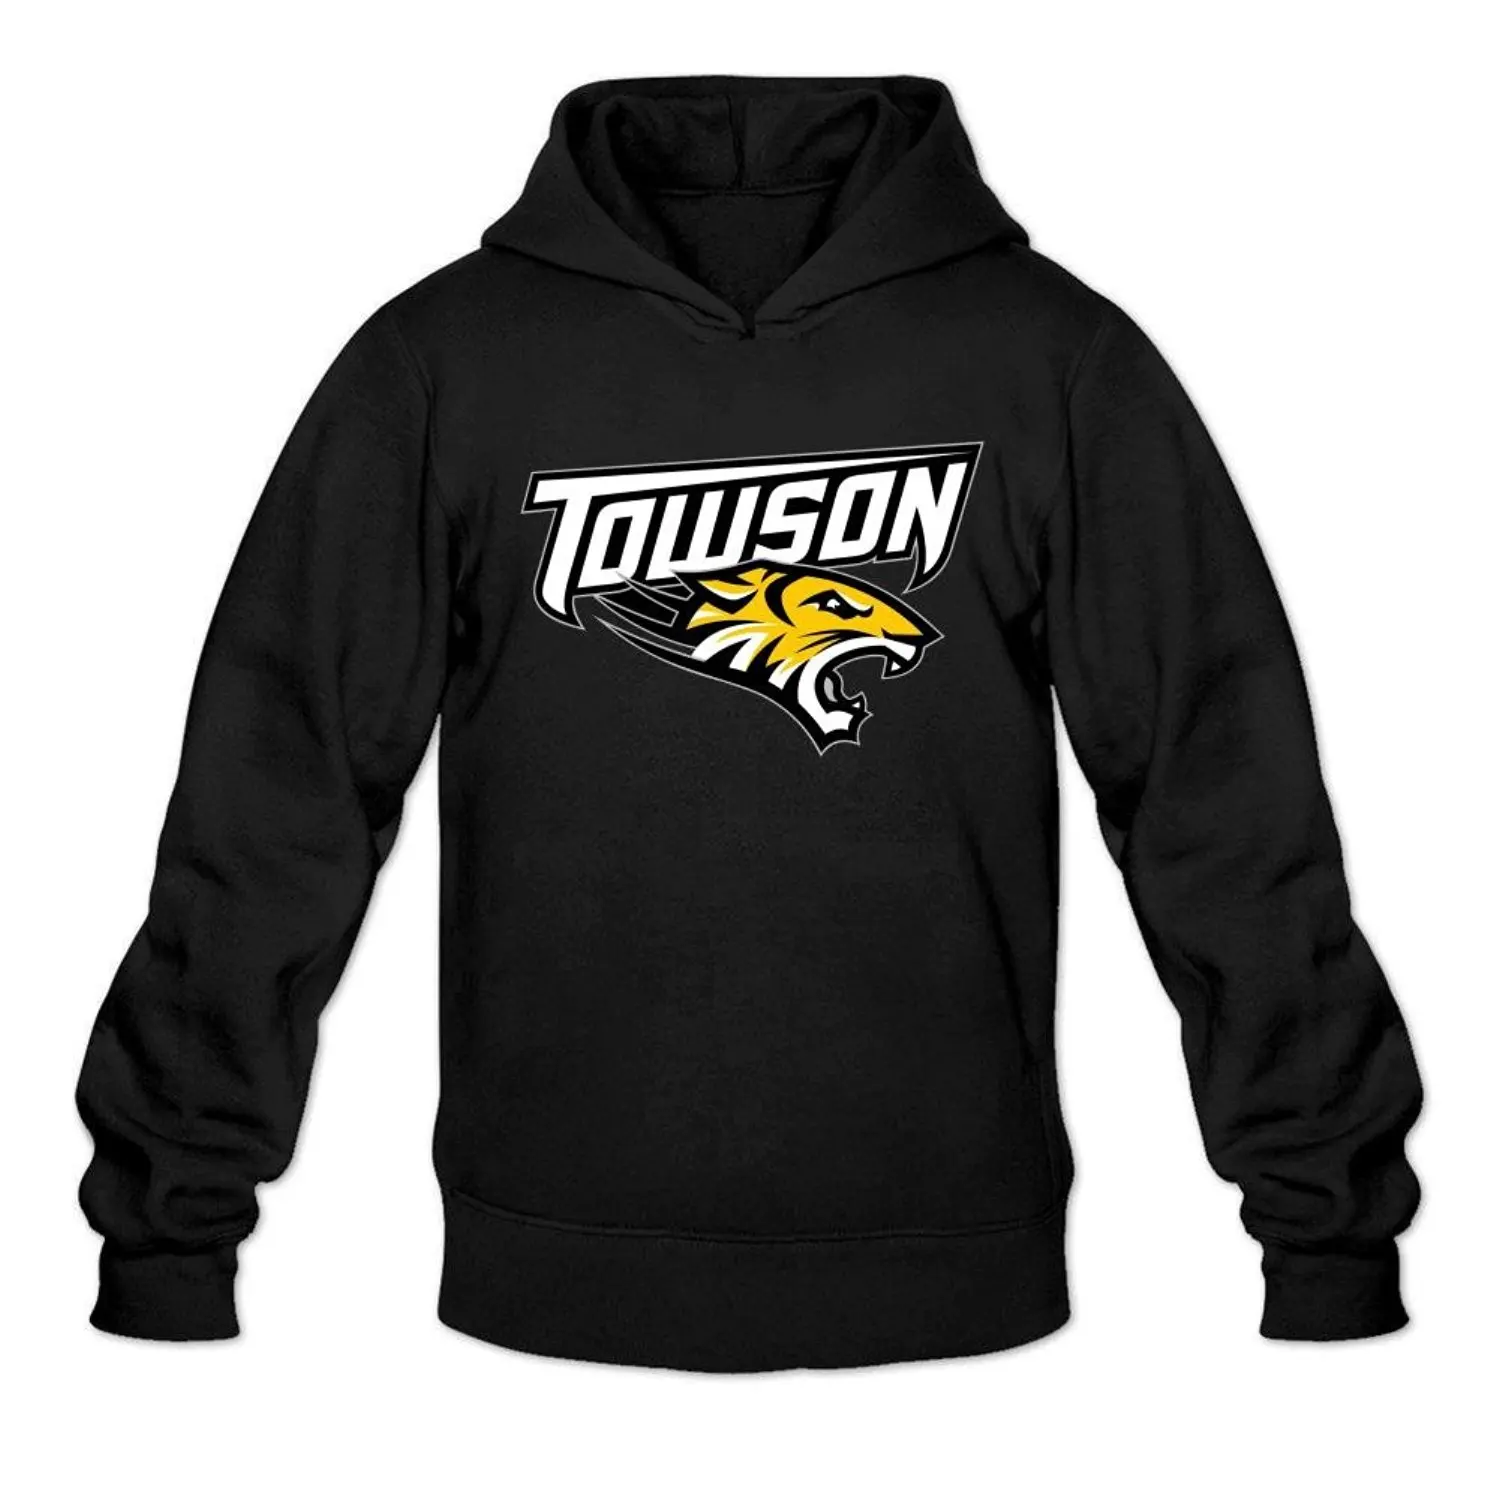 college team hoodies